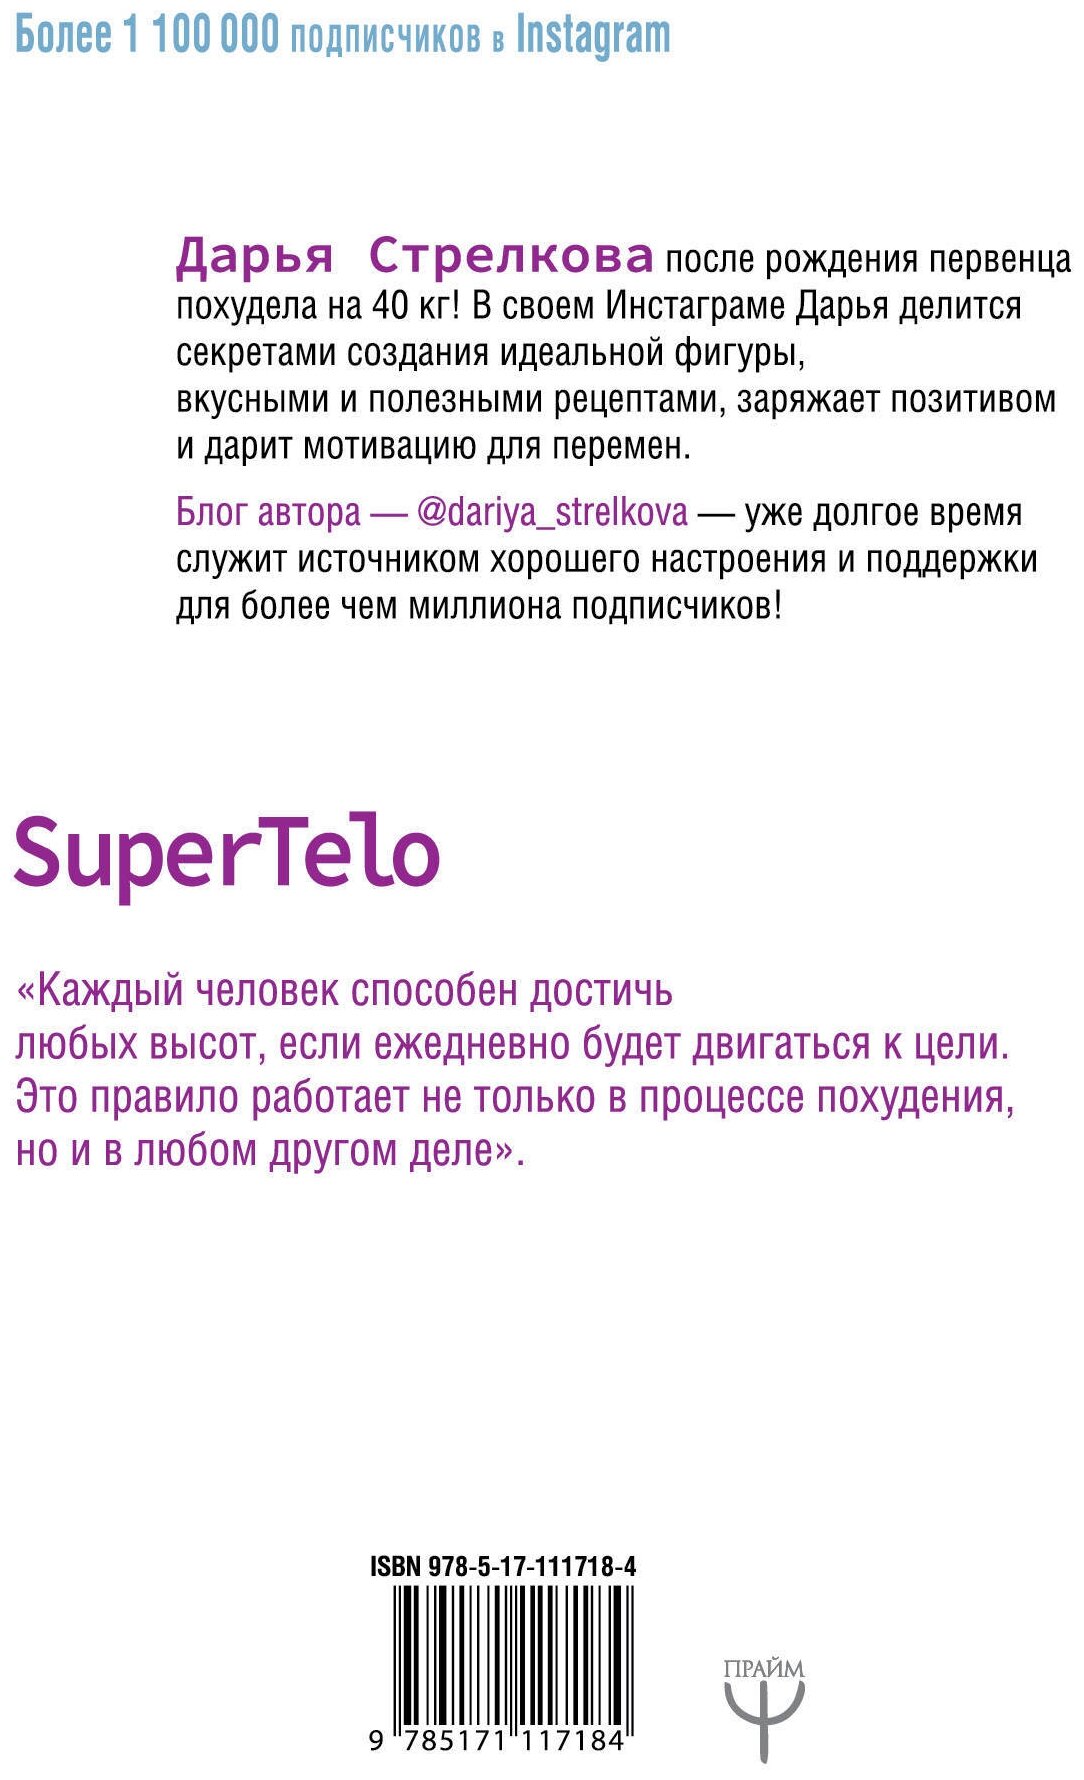 SuperTelo. Идеальная фигура навсегда - фото №2